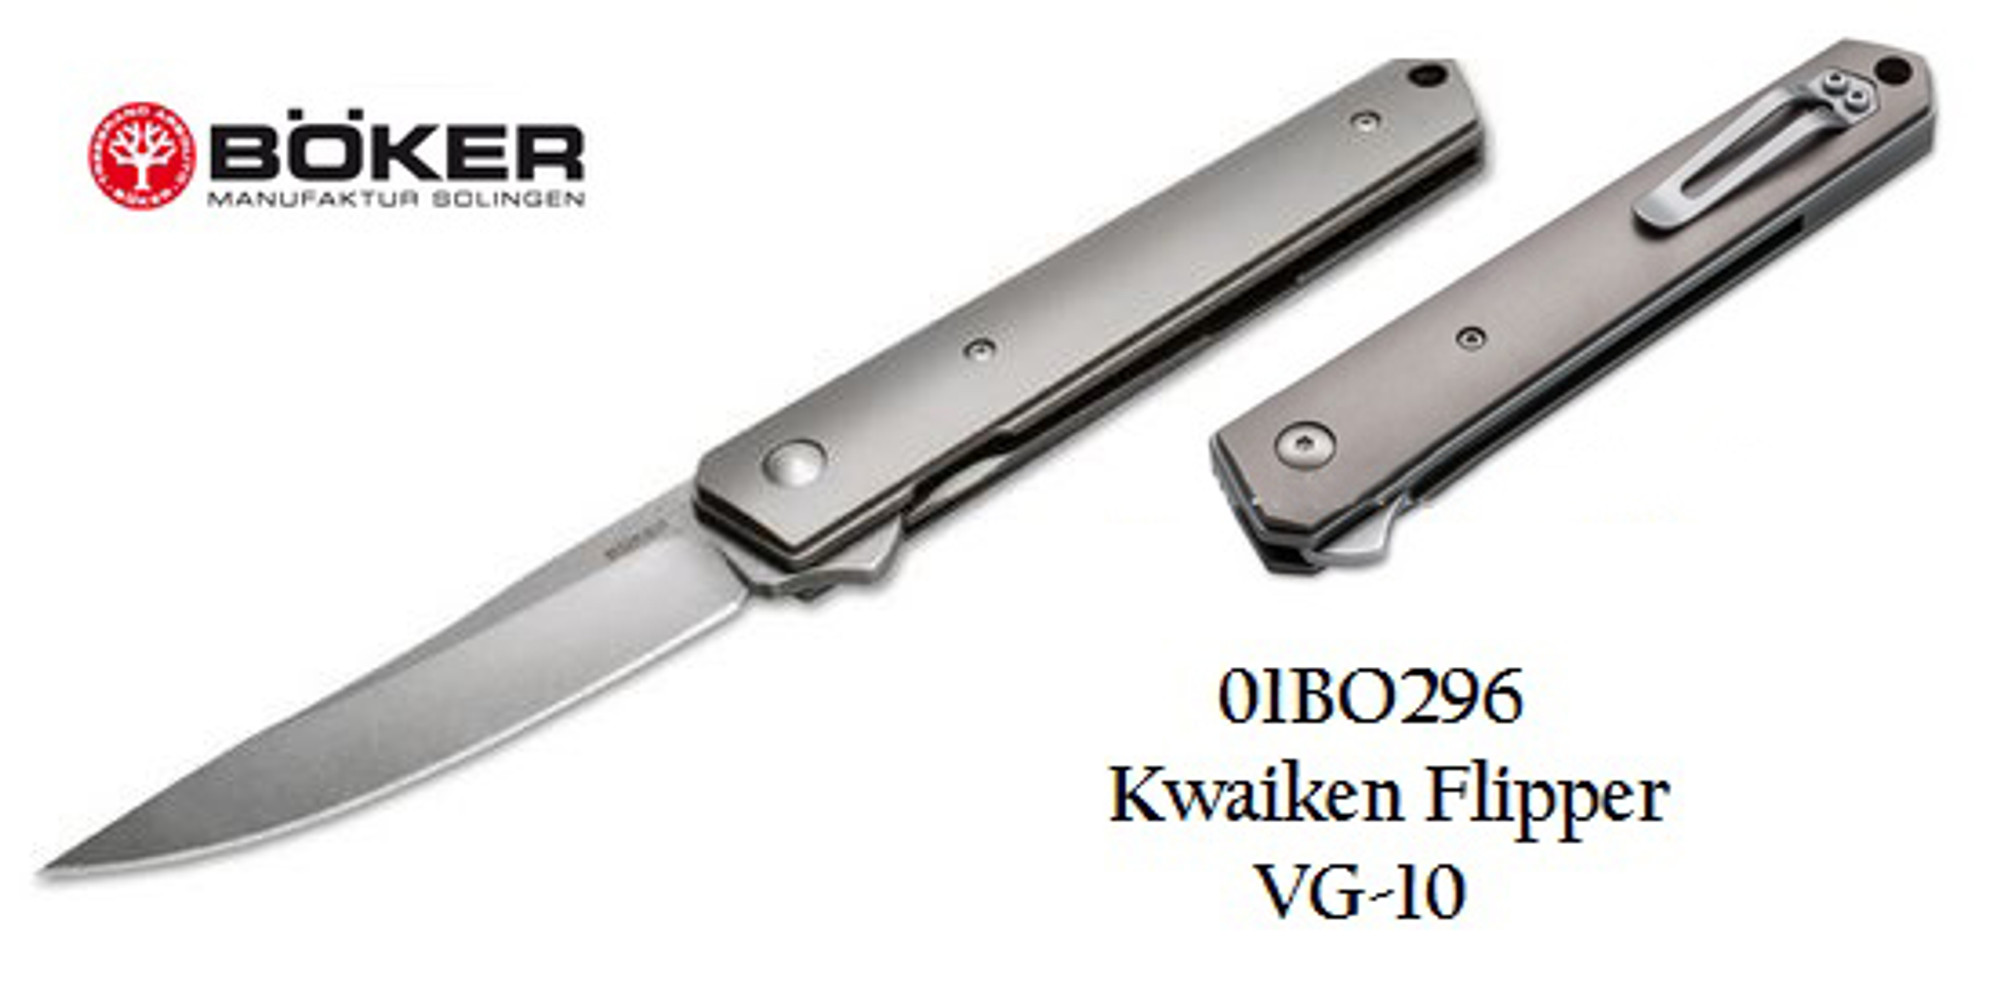 Boker Plus 01BO296 Kwaiken Flipper VG-10 - Titanium Handles